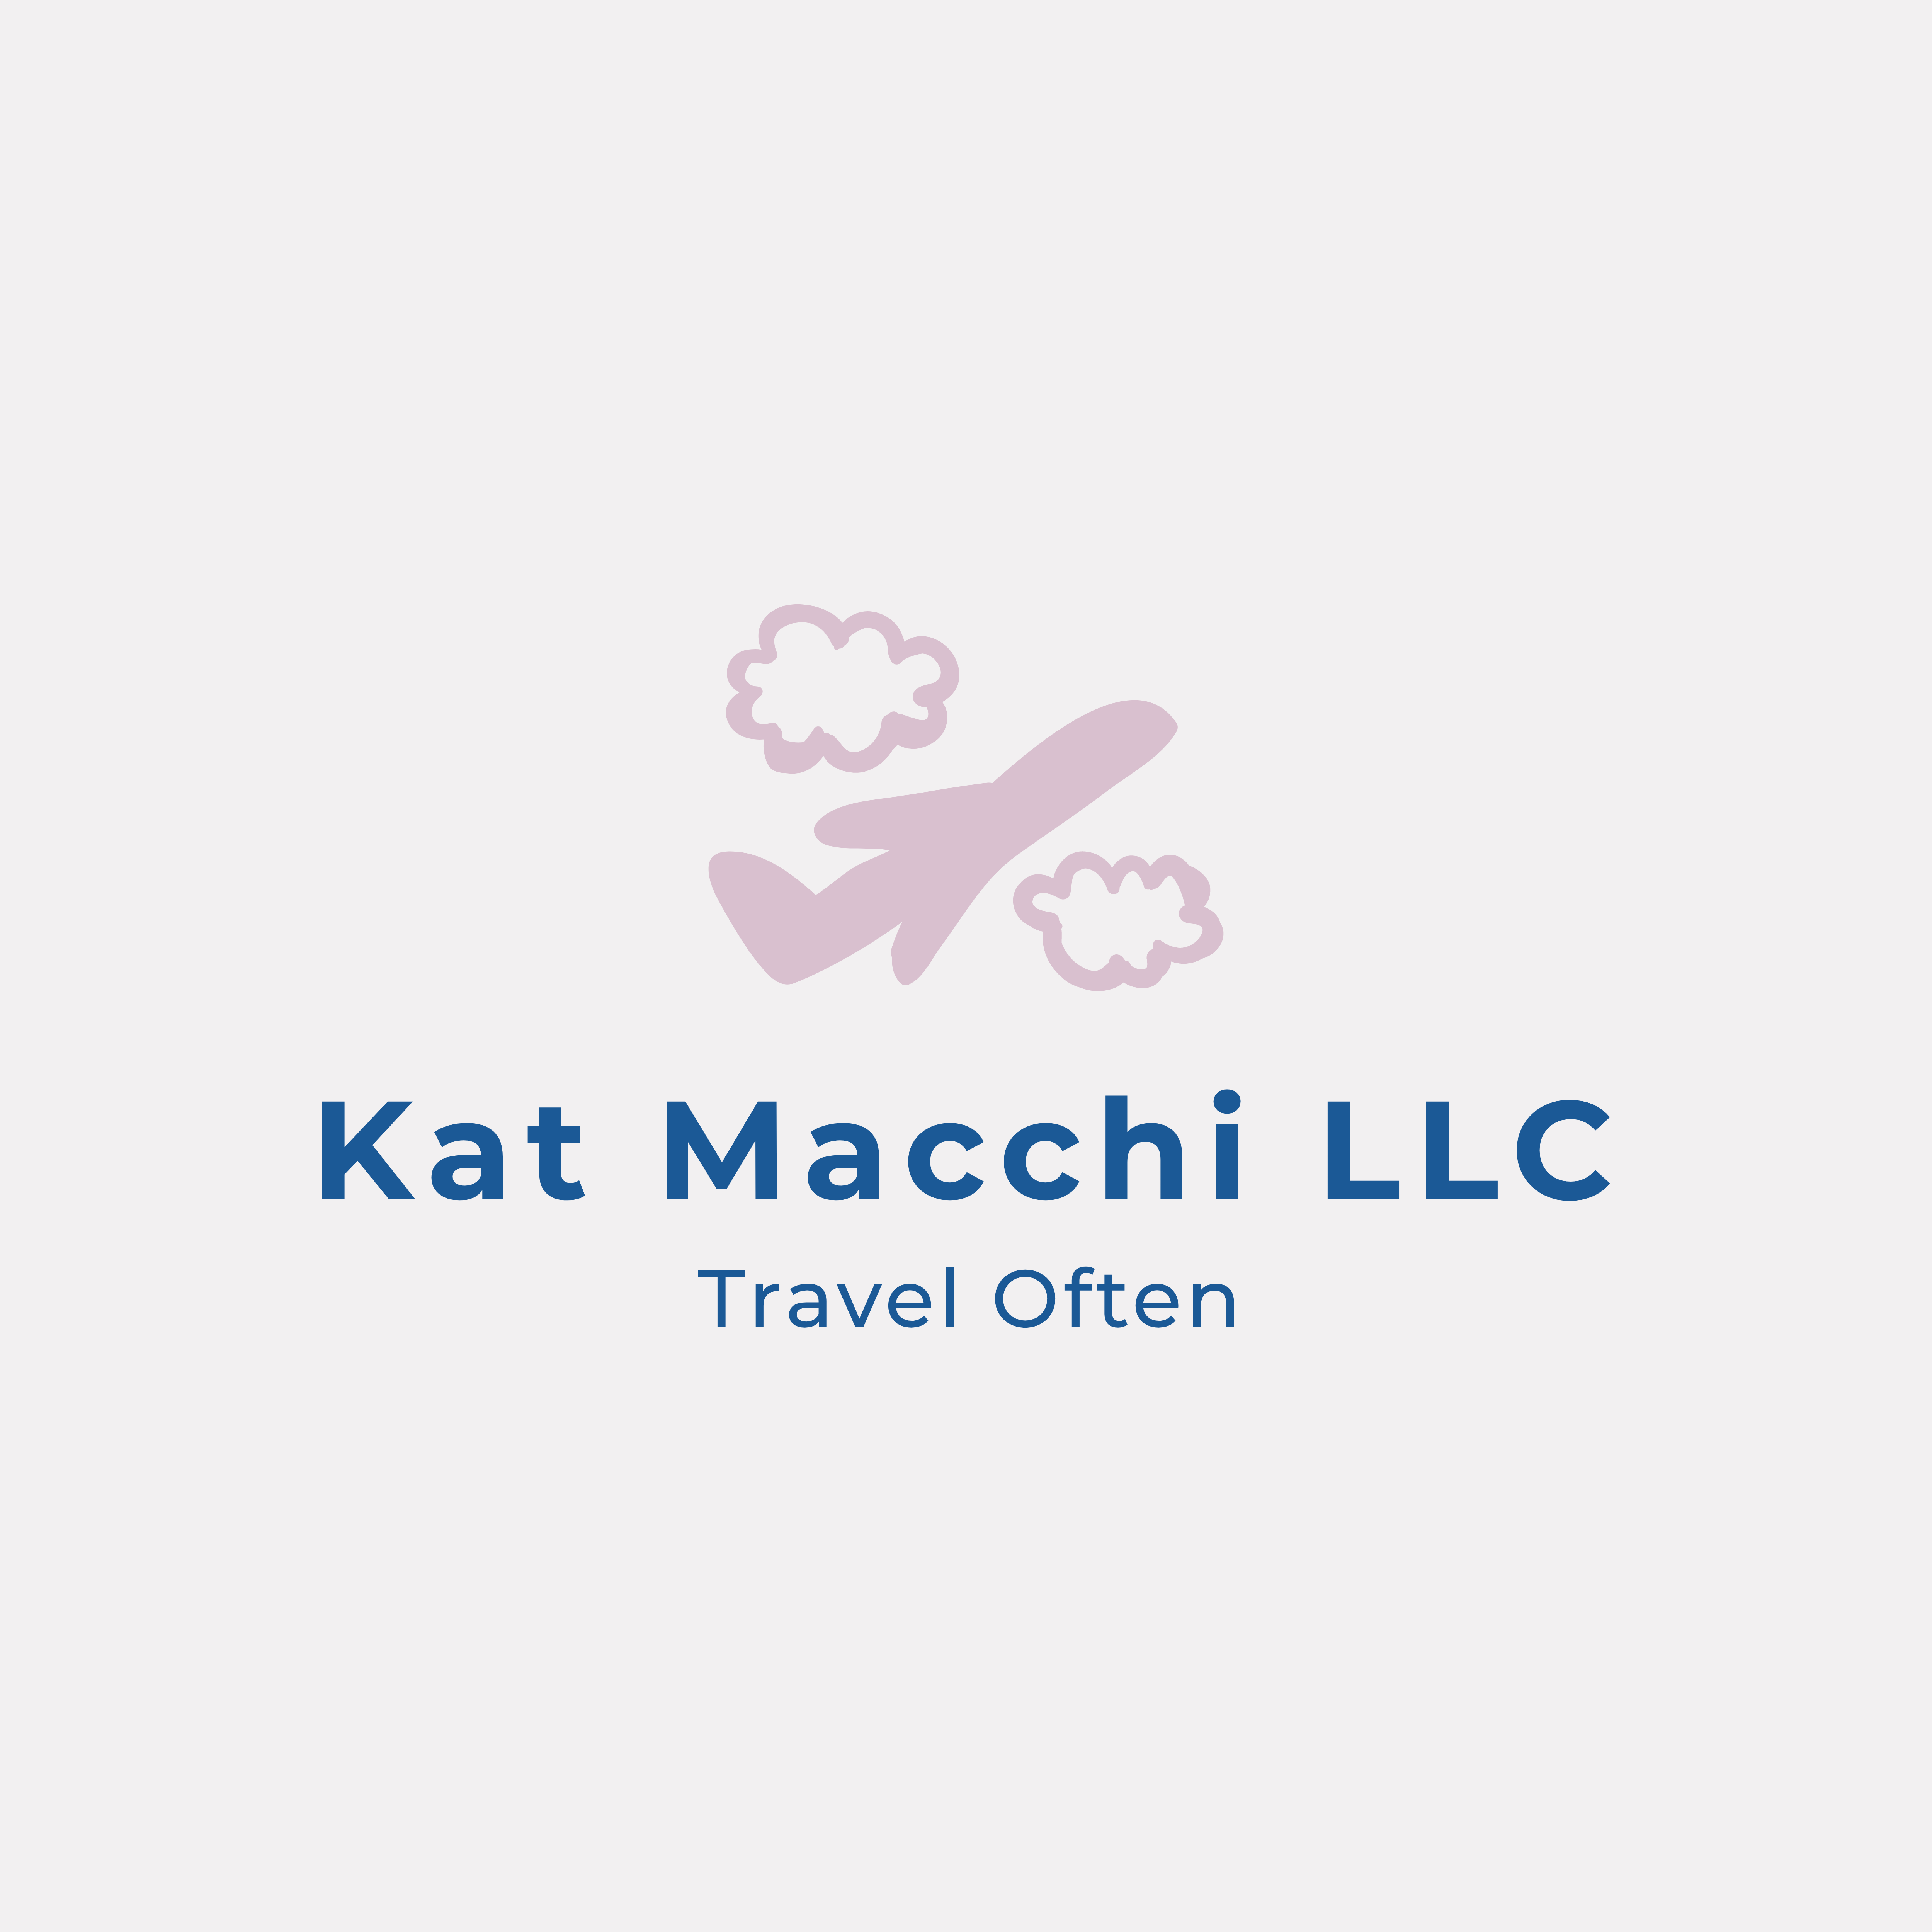 Kat Macchi LLC